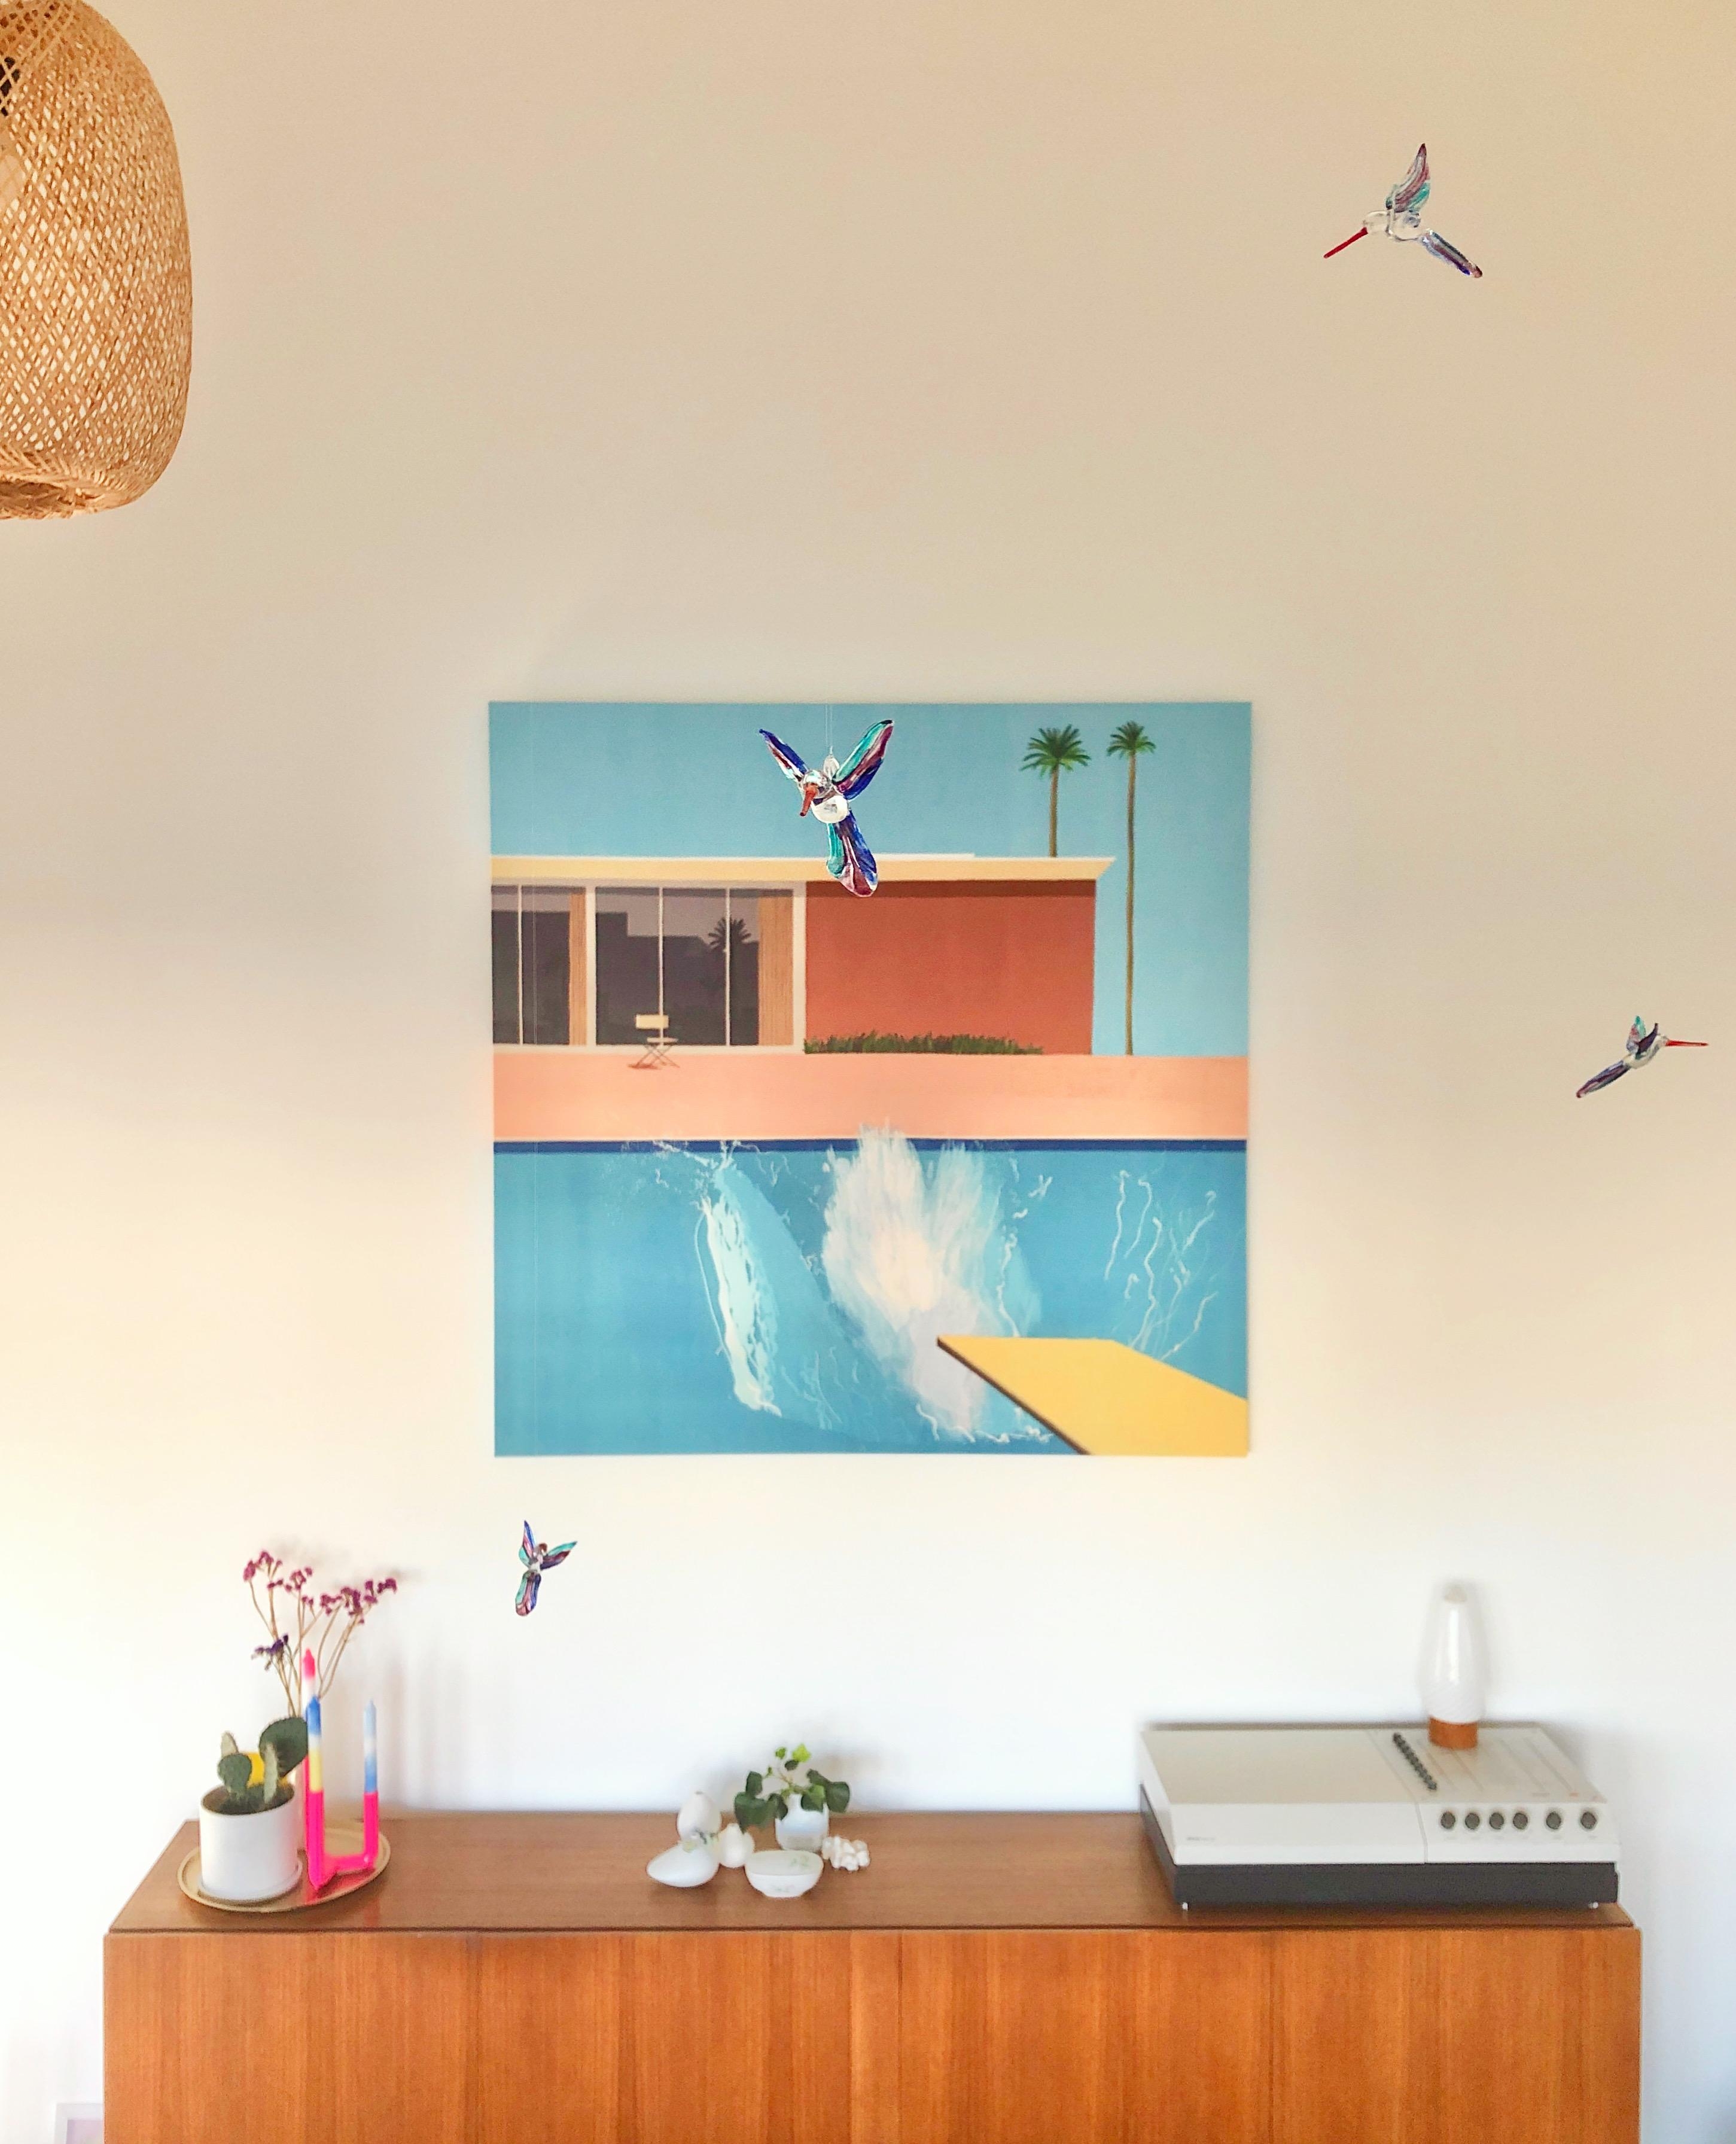 Seht ihr die Kolibris? #wohnzimmer #mobile #bilderwand